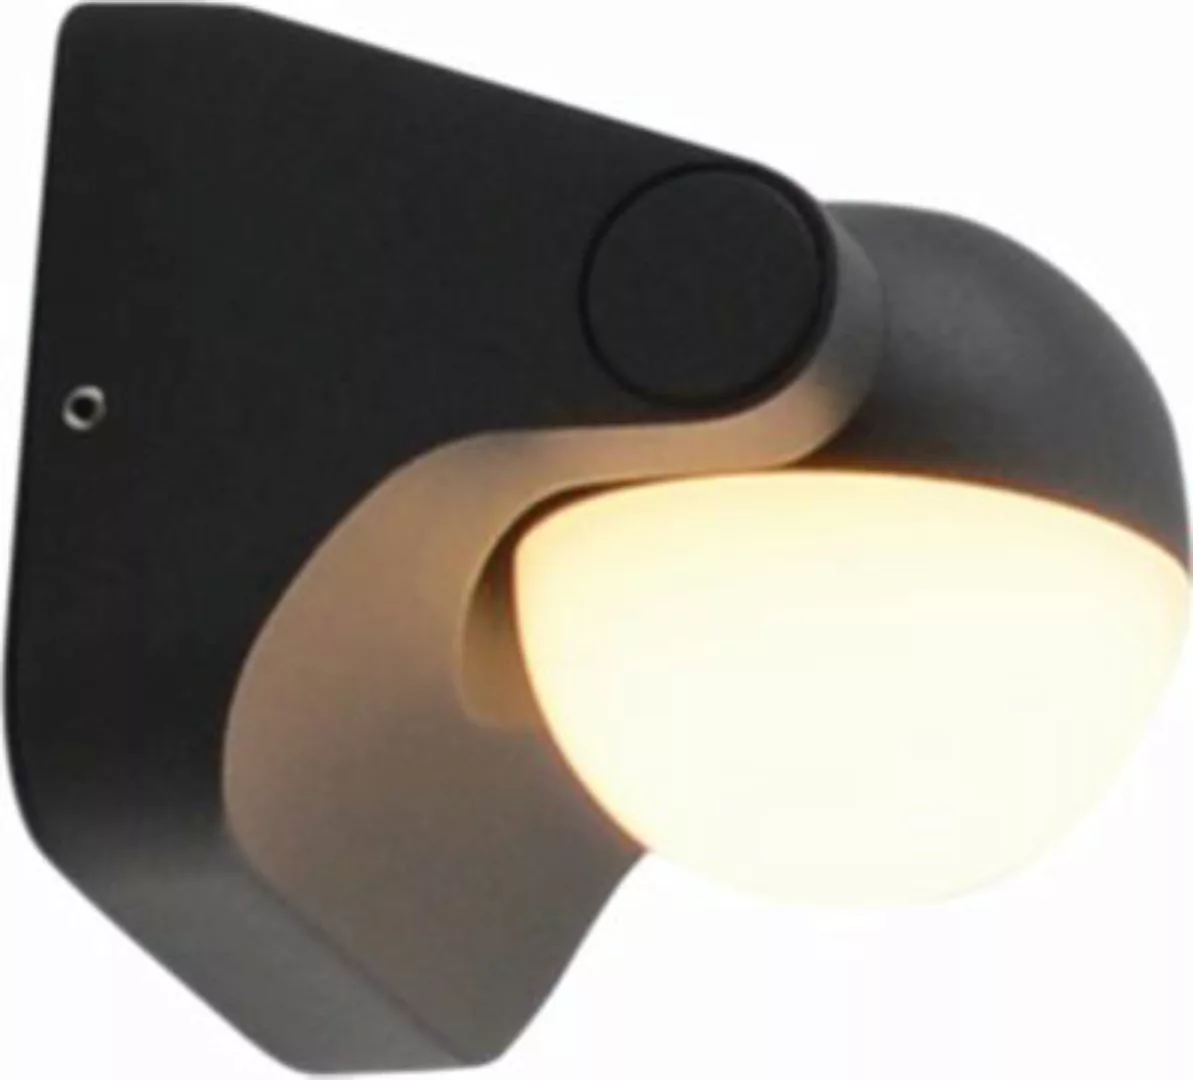 Näve LED-Außenwandleuchte anthrazit günstig online kaufen